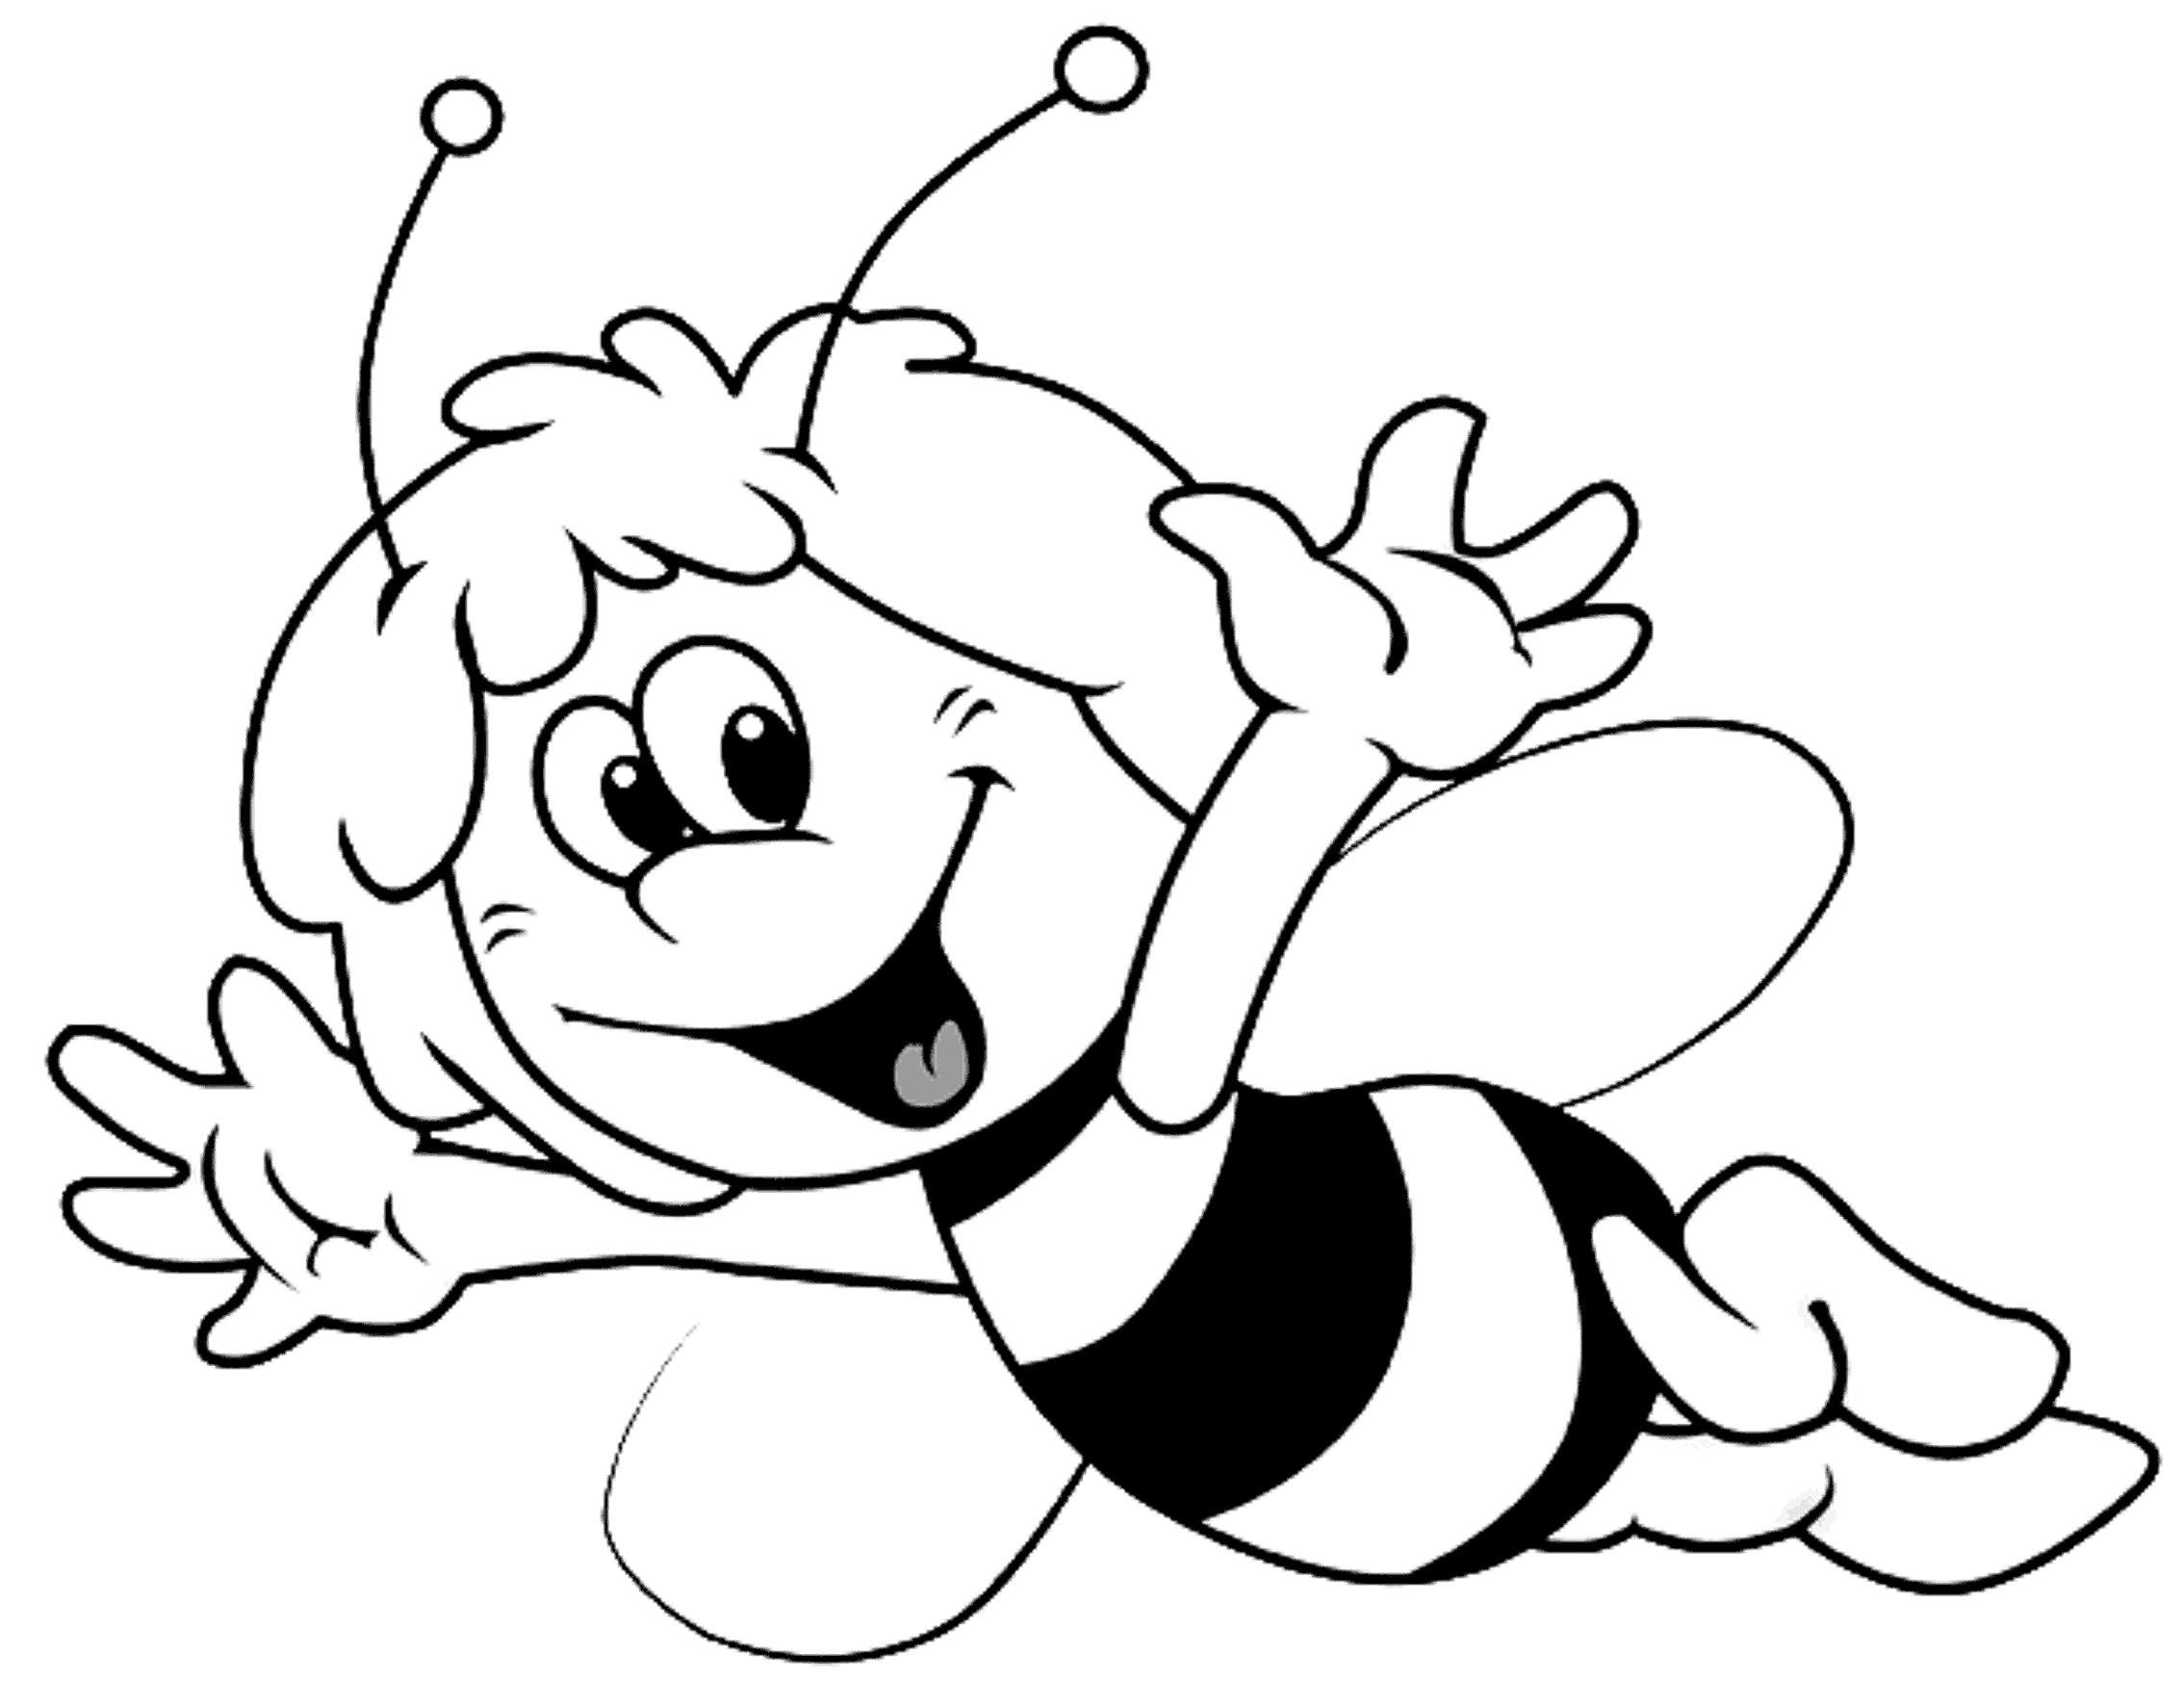 Черно белые картинки для детей раскраска. Пчелка раскраска. Пчела раскраска. Раскраска пчёлка для детей. Пчелка Майя раскраска.